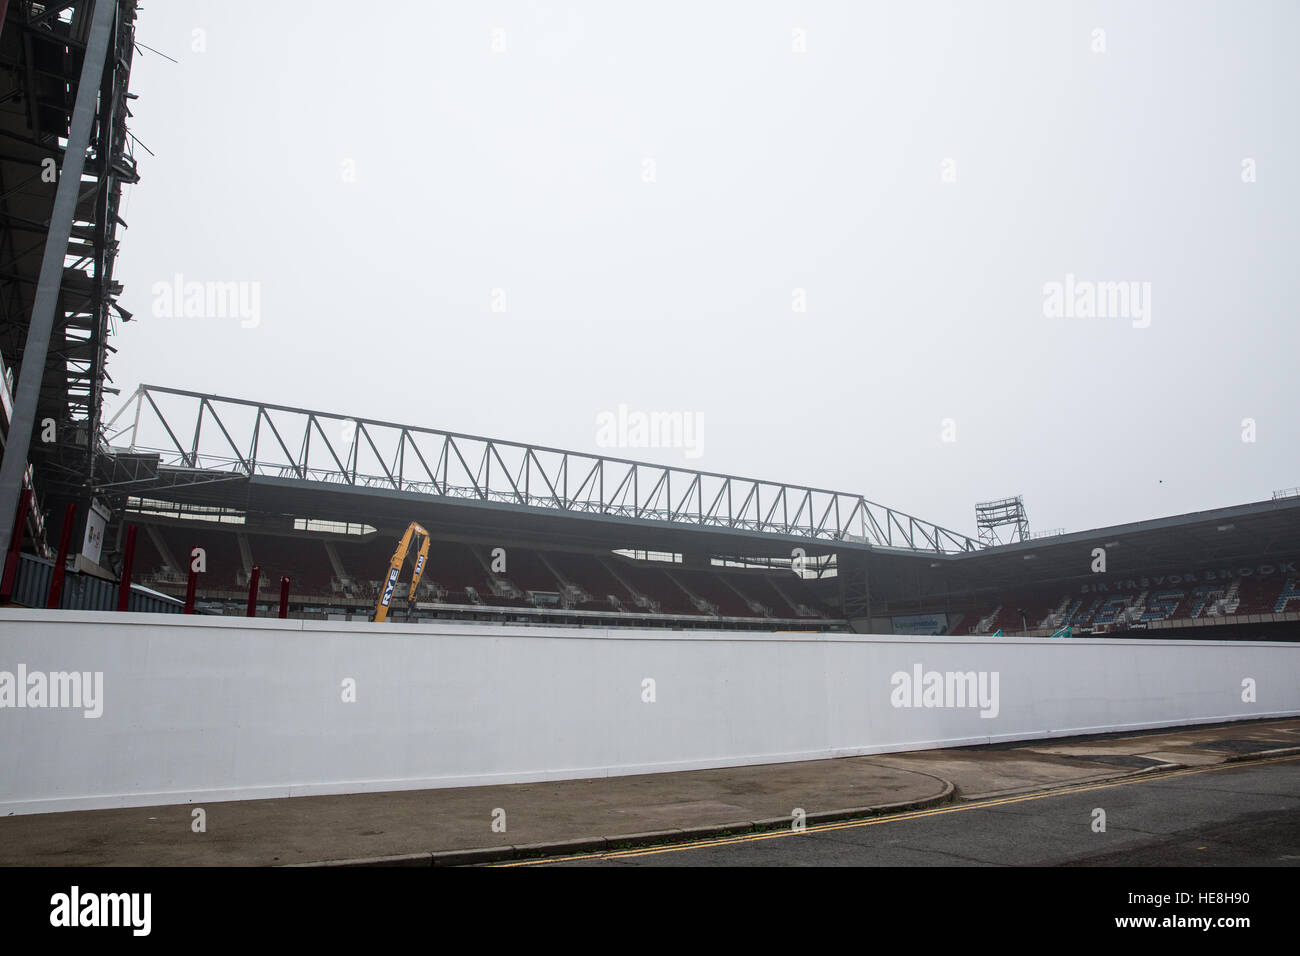 Londra, Regno Unito. 17 dicembre, 2016. La East Stand al West Ham United dell ex Boleyn Ground di Upton Park ora è stata demolita. Foto Stock